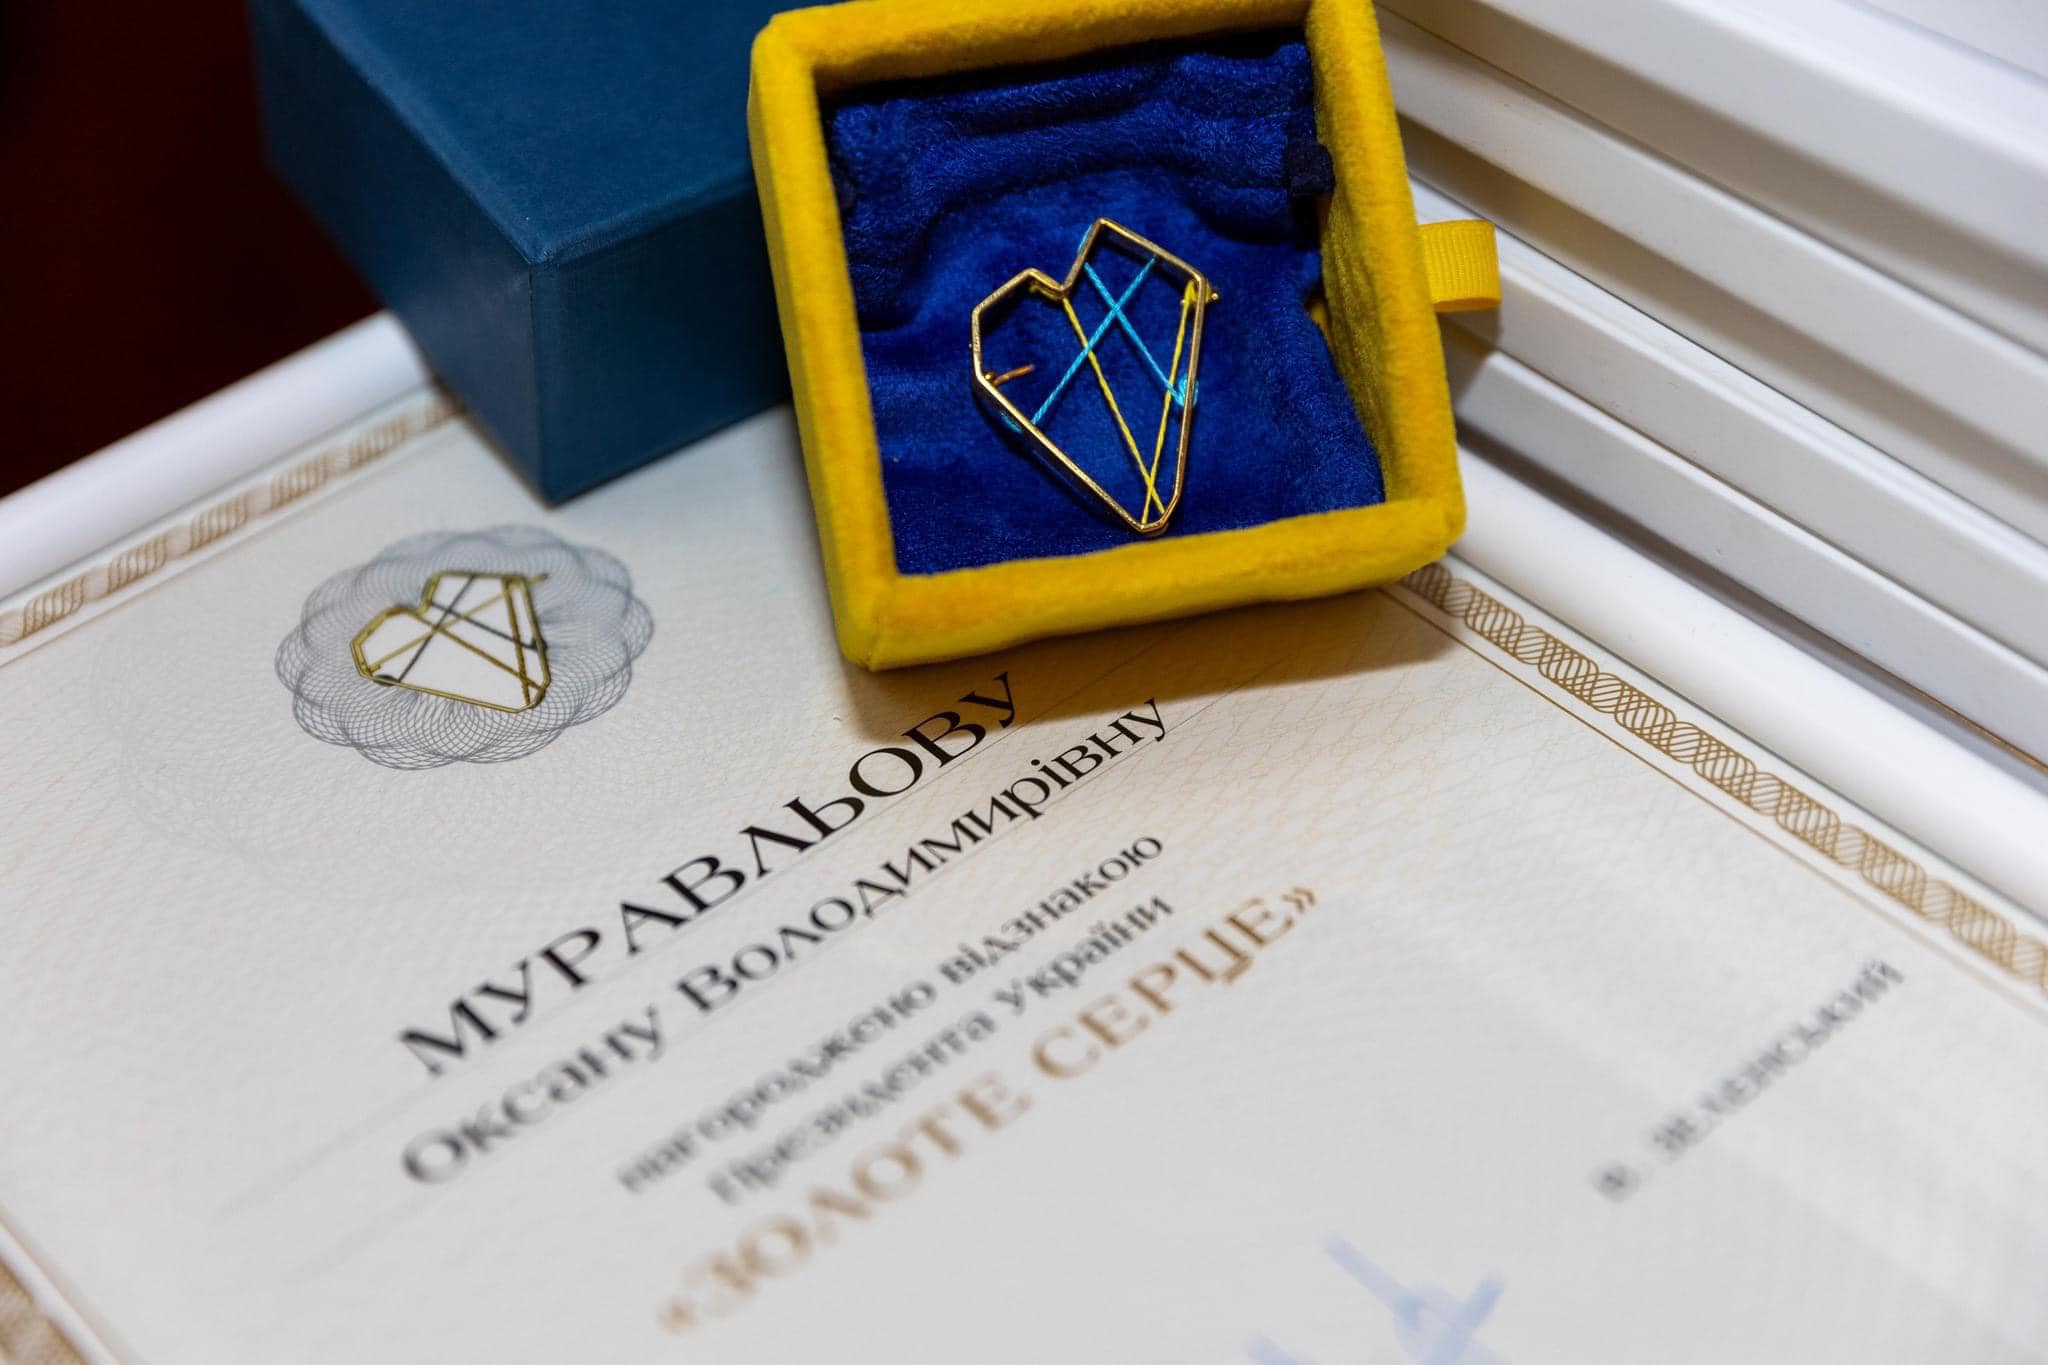 Президентская награда "Золотое сердце". Фото: Оксана Муравлева/Facebook